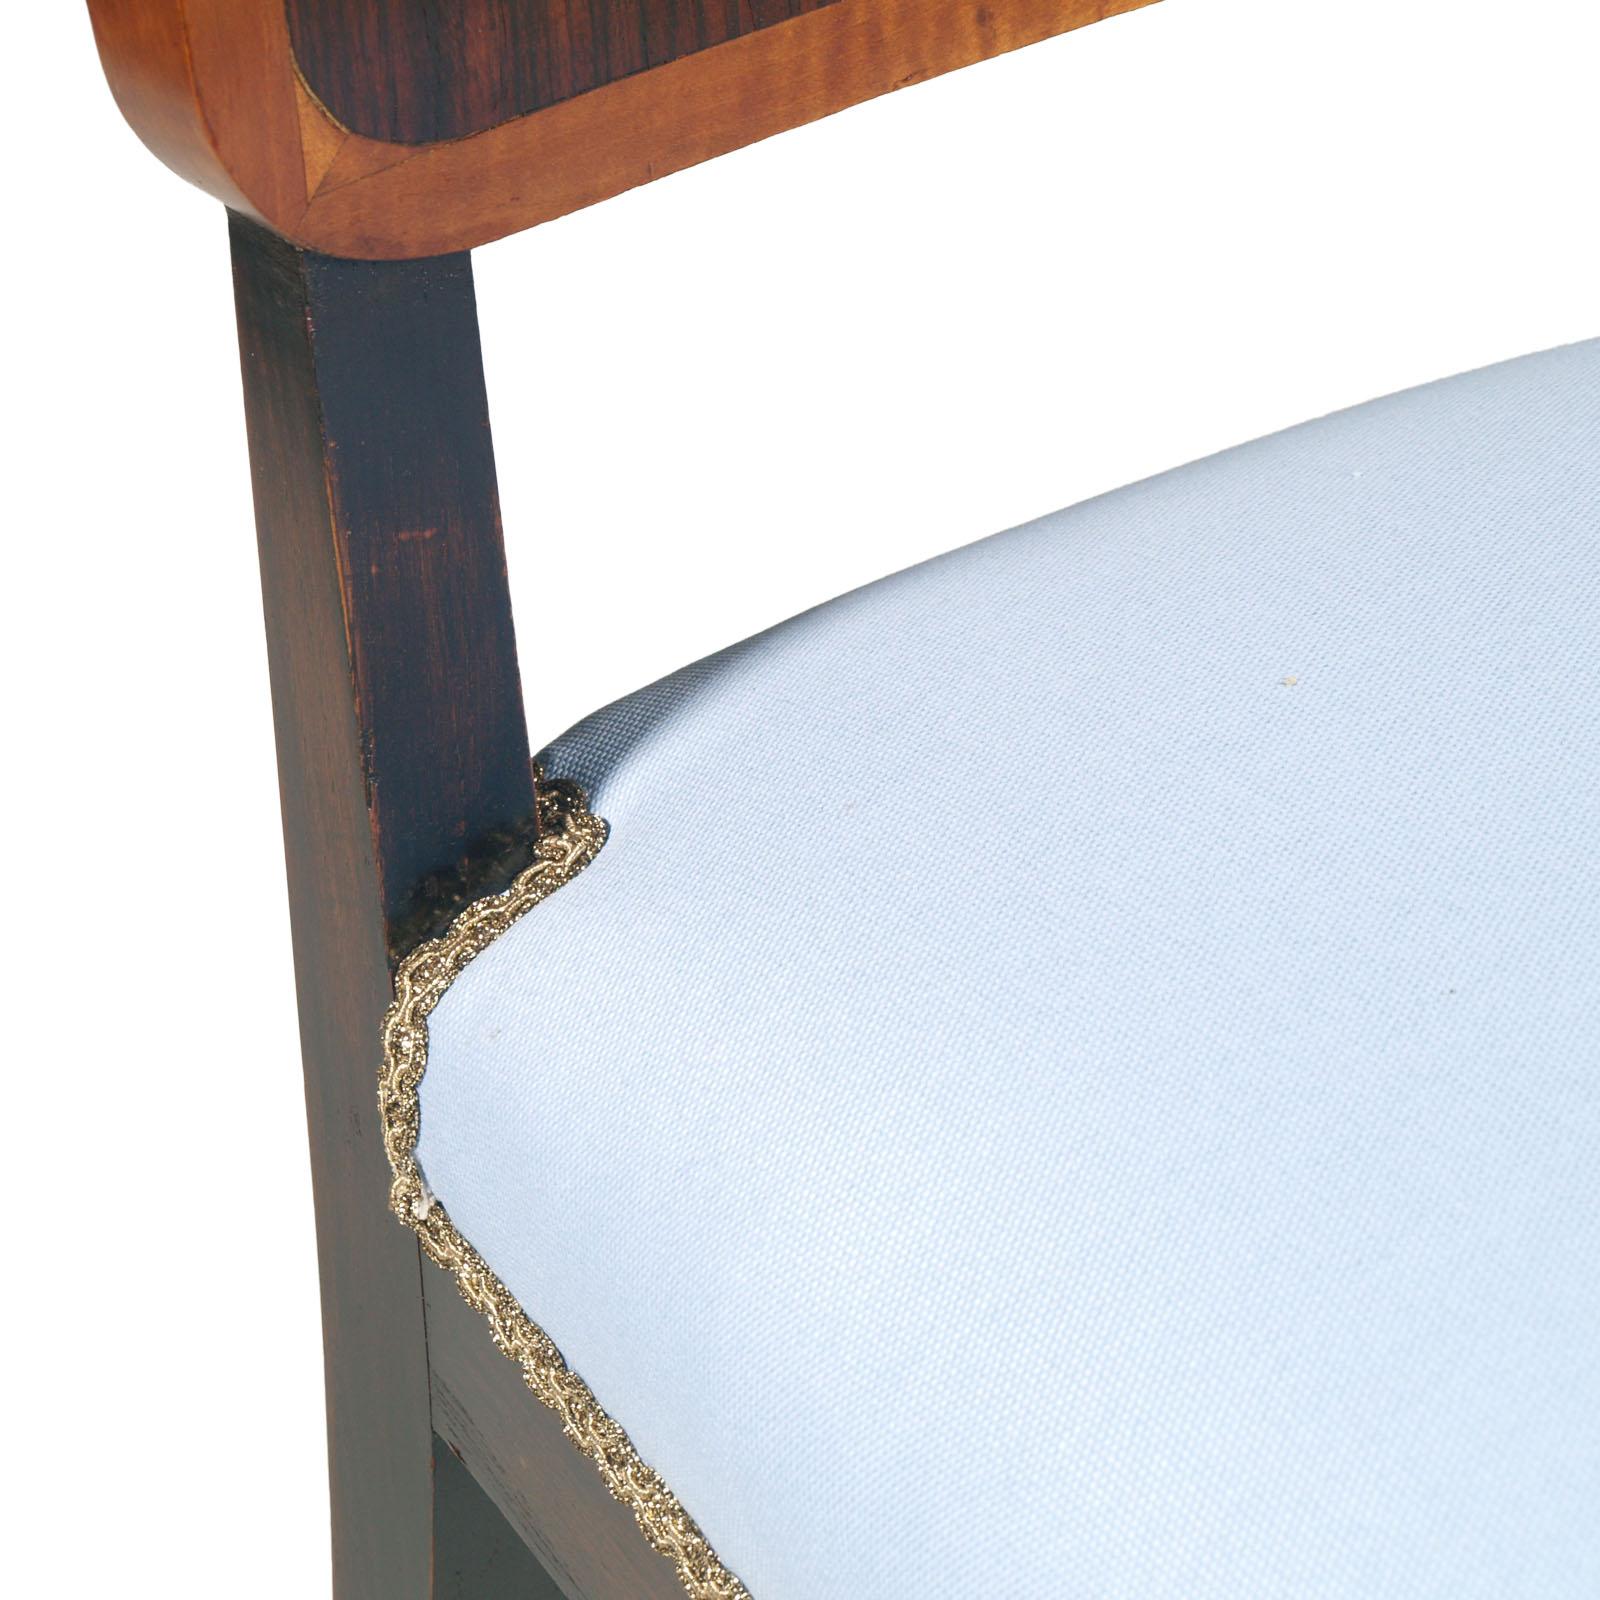 1930s Art Deco Italian Side Chair by Borsani, Atelier di Varedo New Upholstered  For Sale 1